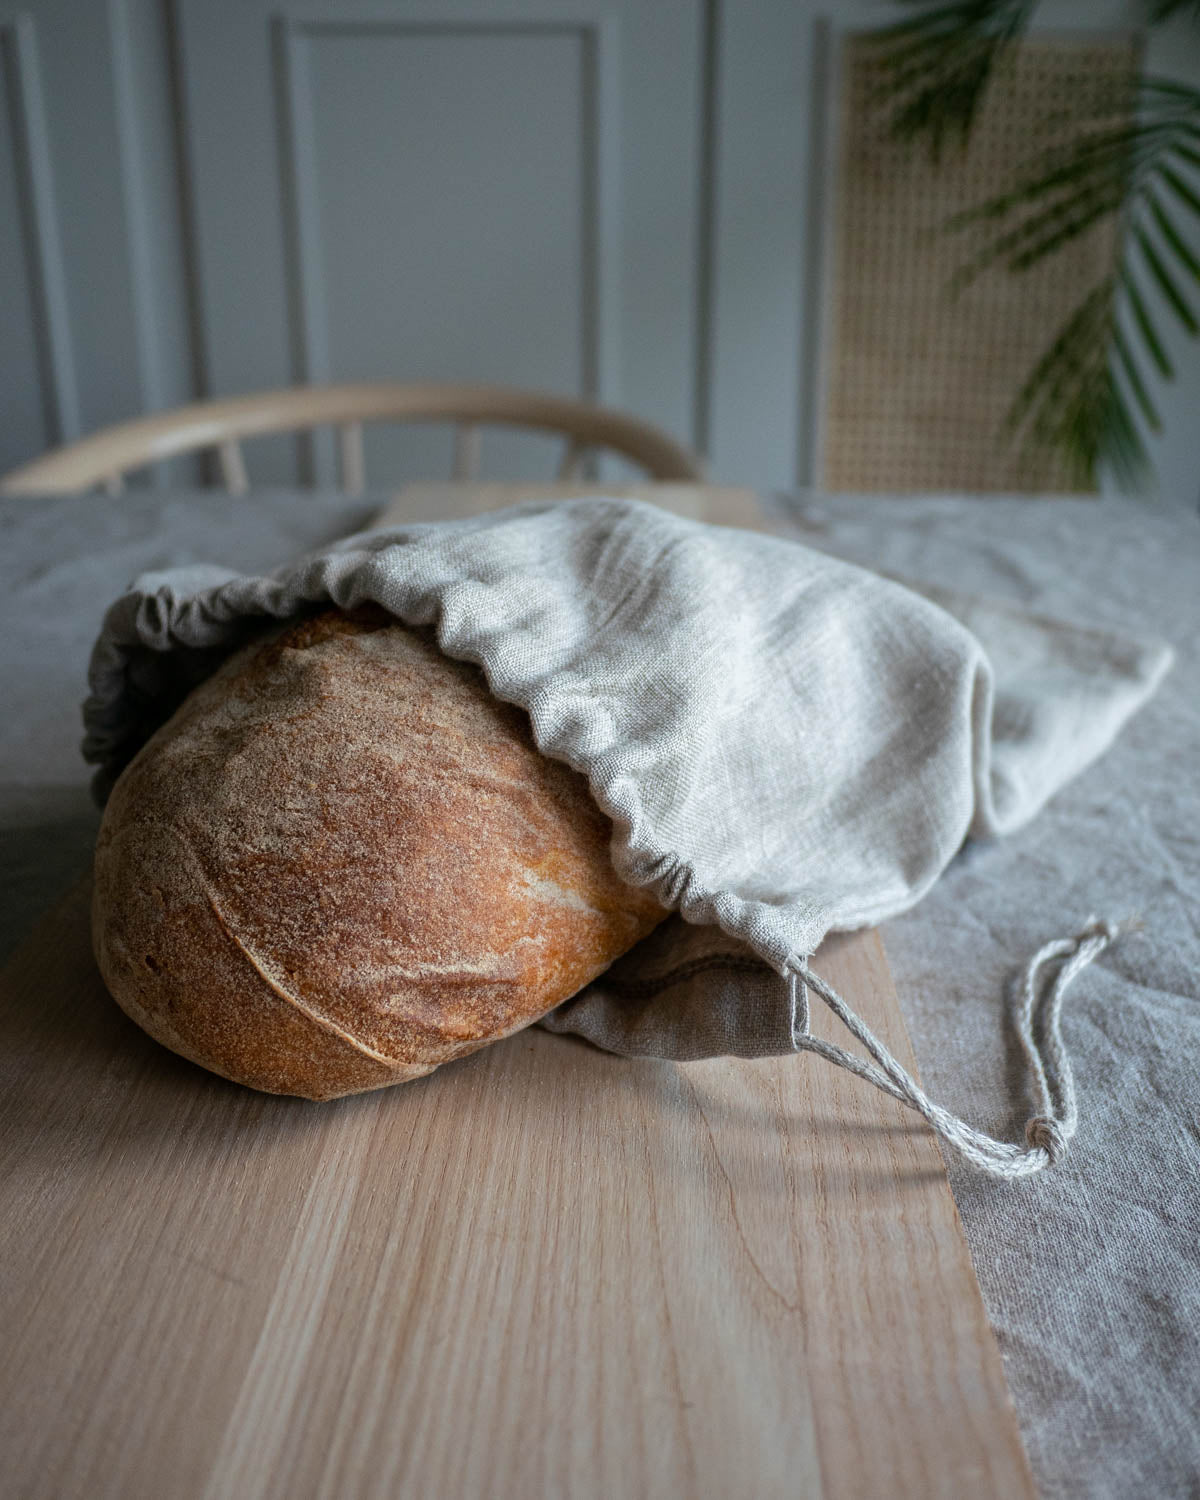 Brödpåse i naturell linnetyg som ligger på ett träbord. I brödpåsen ligger ett surdegsbröd som skymtar i öppningen. 